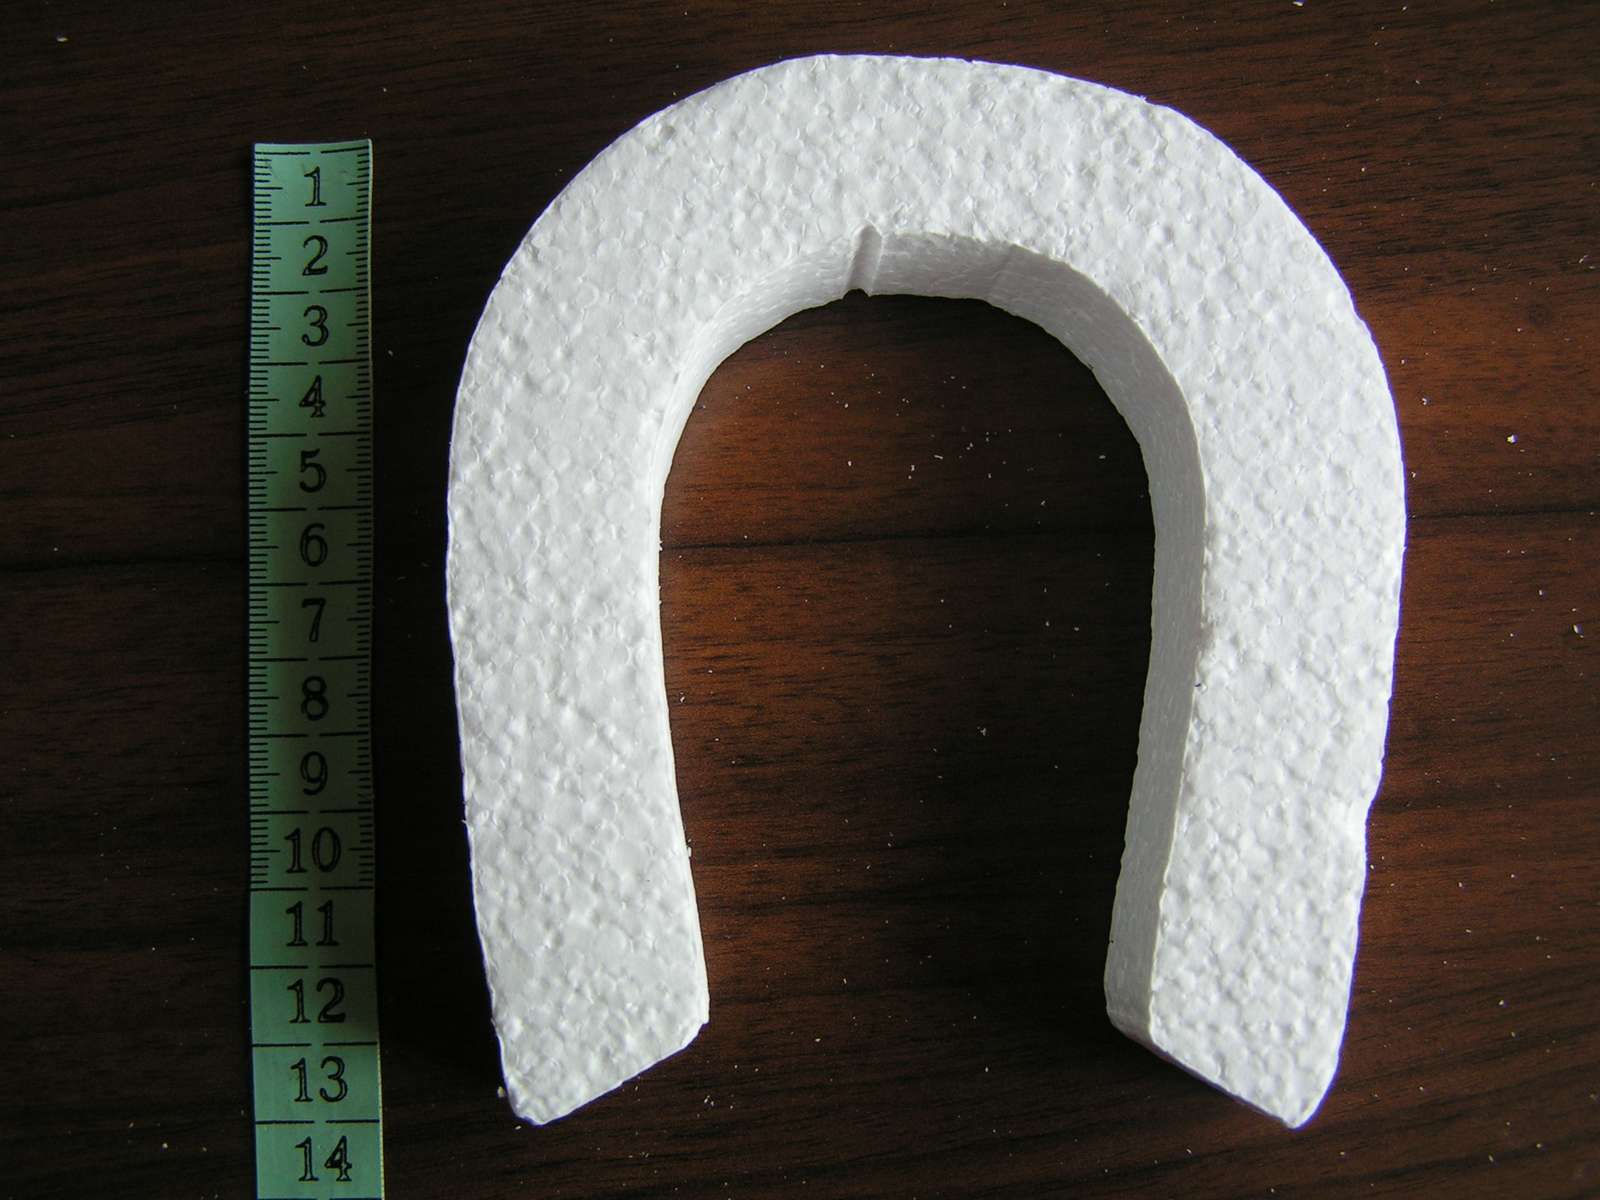 Polystyrenová podkova cca 14 x 11,5 cm - Obrázek č. 2